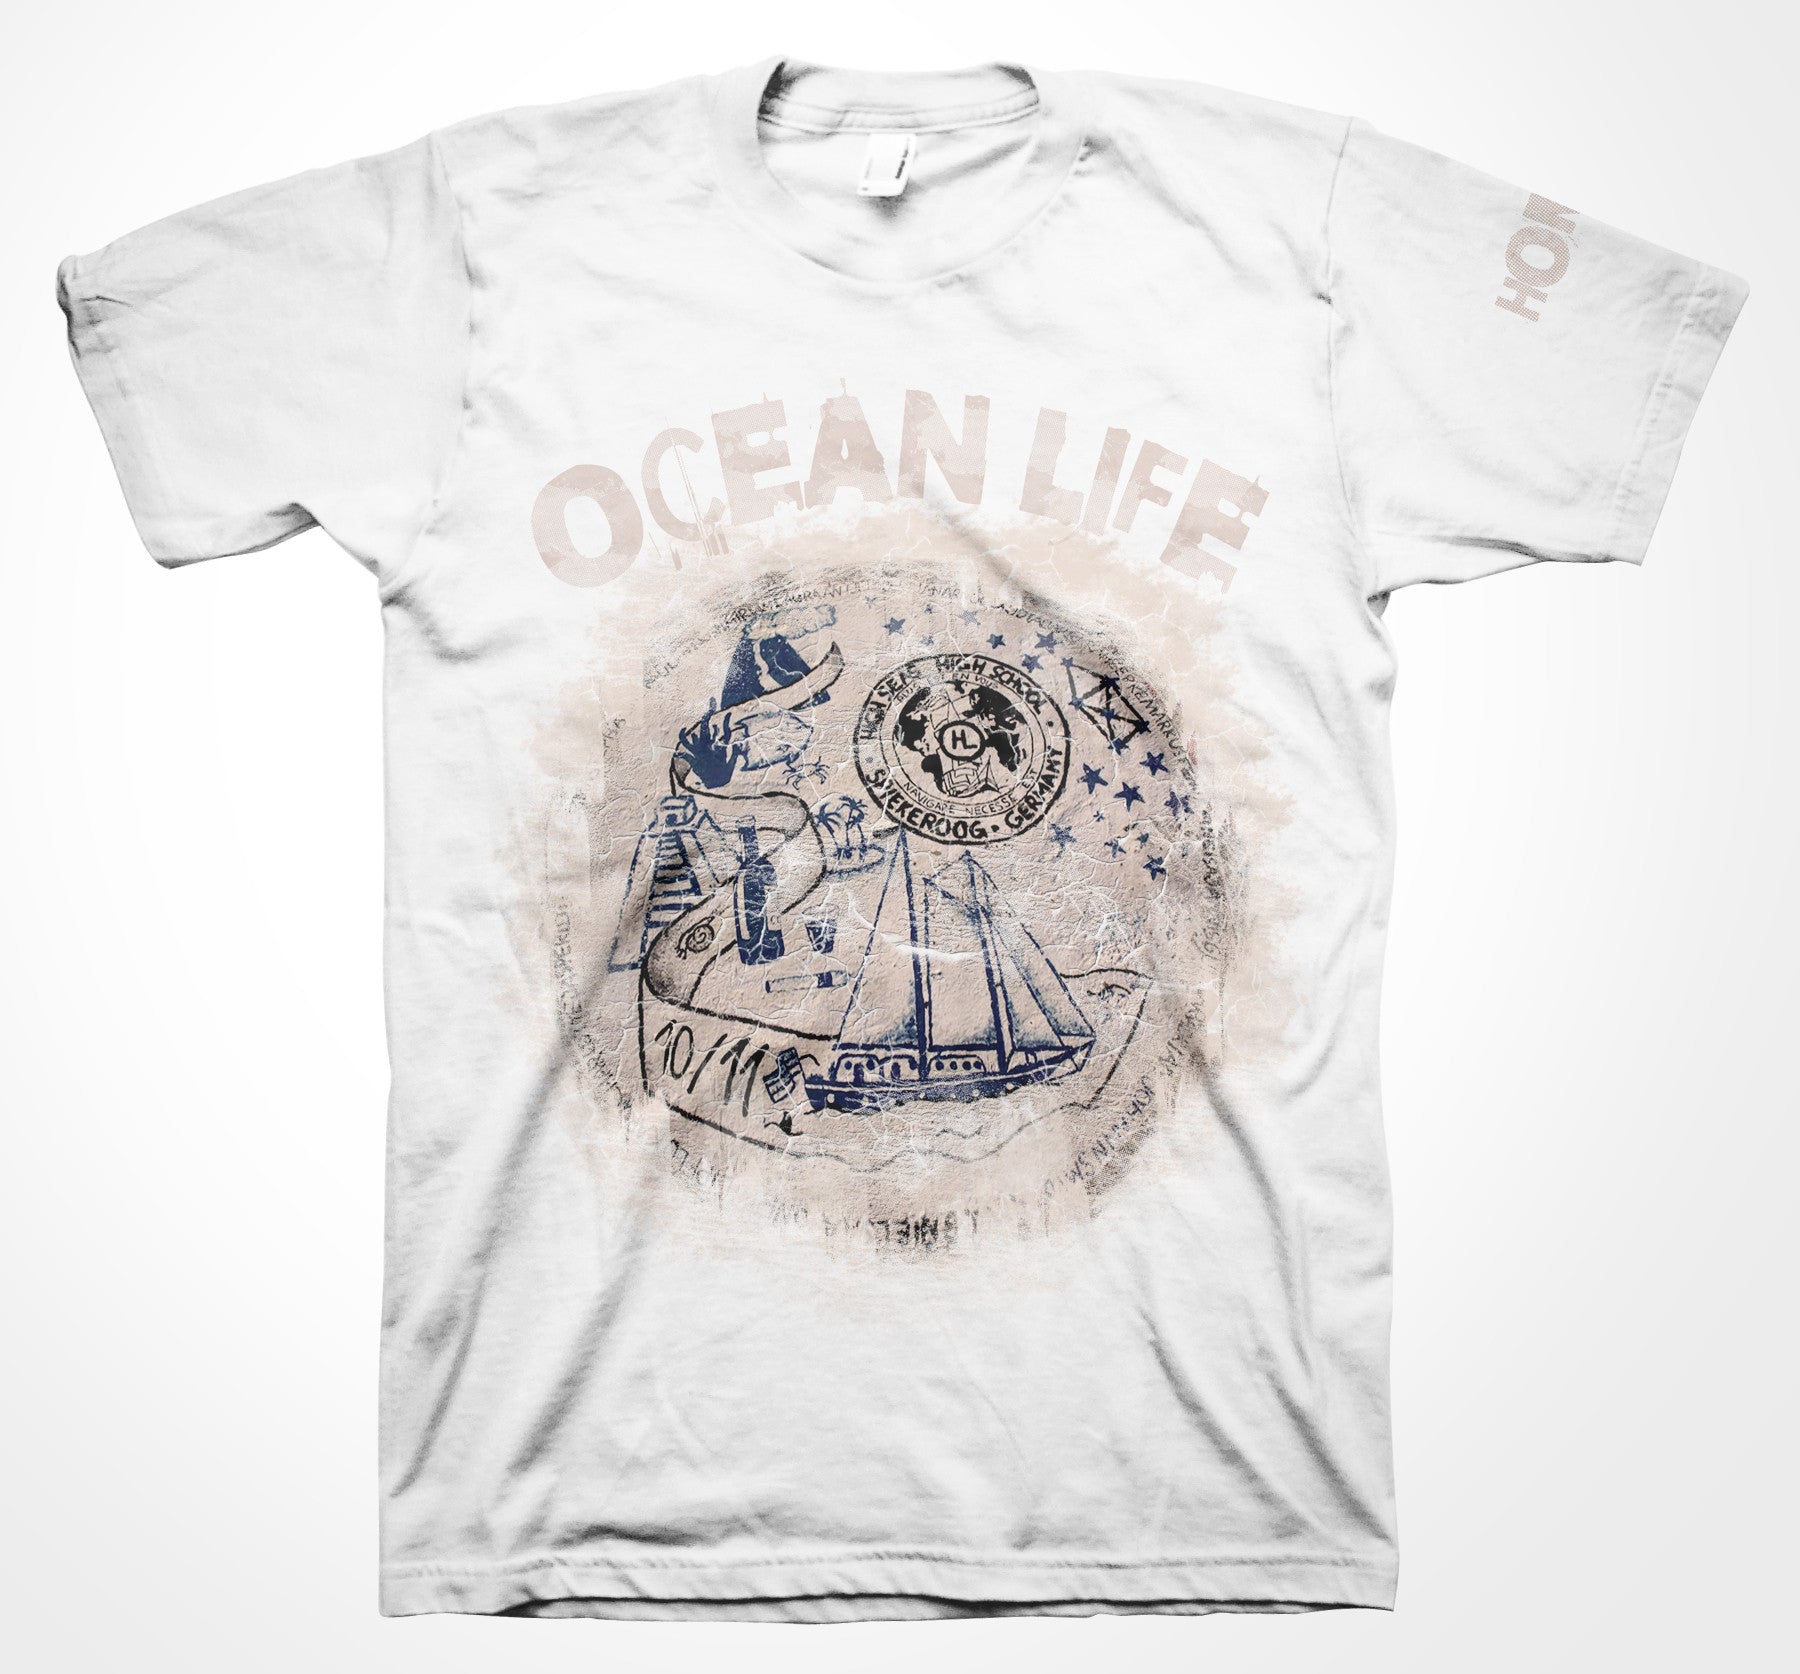 AQUA HMP - T-Shirt 08 - Ocean Life-T-Shirts-AQUATICUS